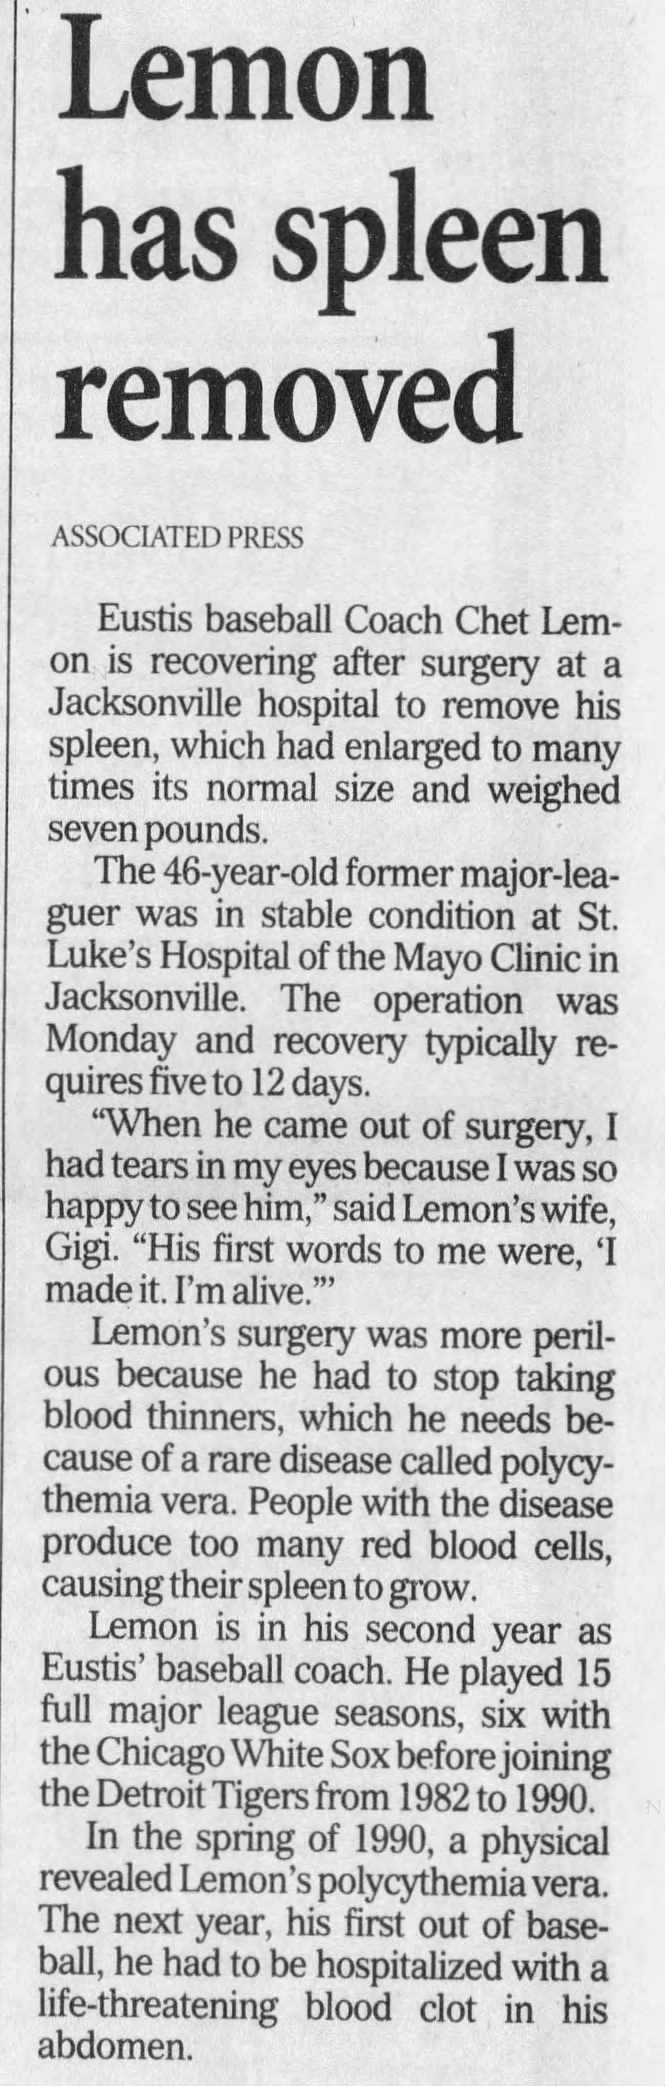 Lemon has spleen removed